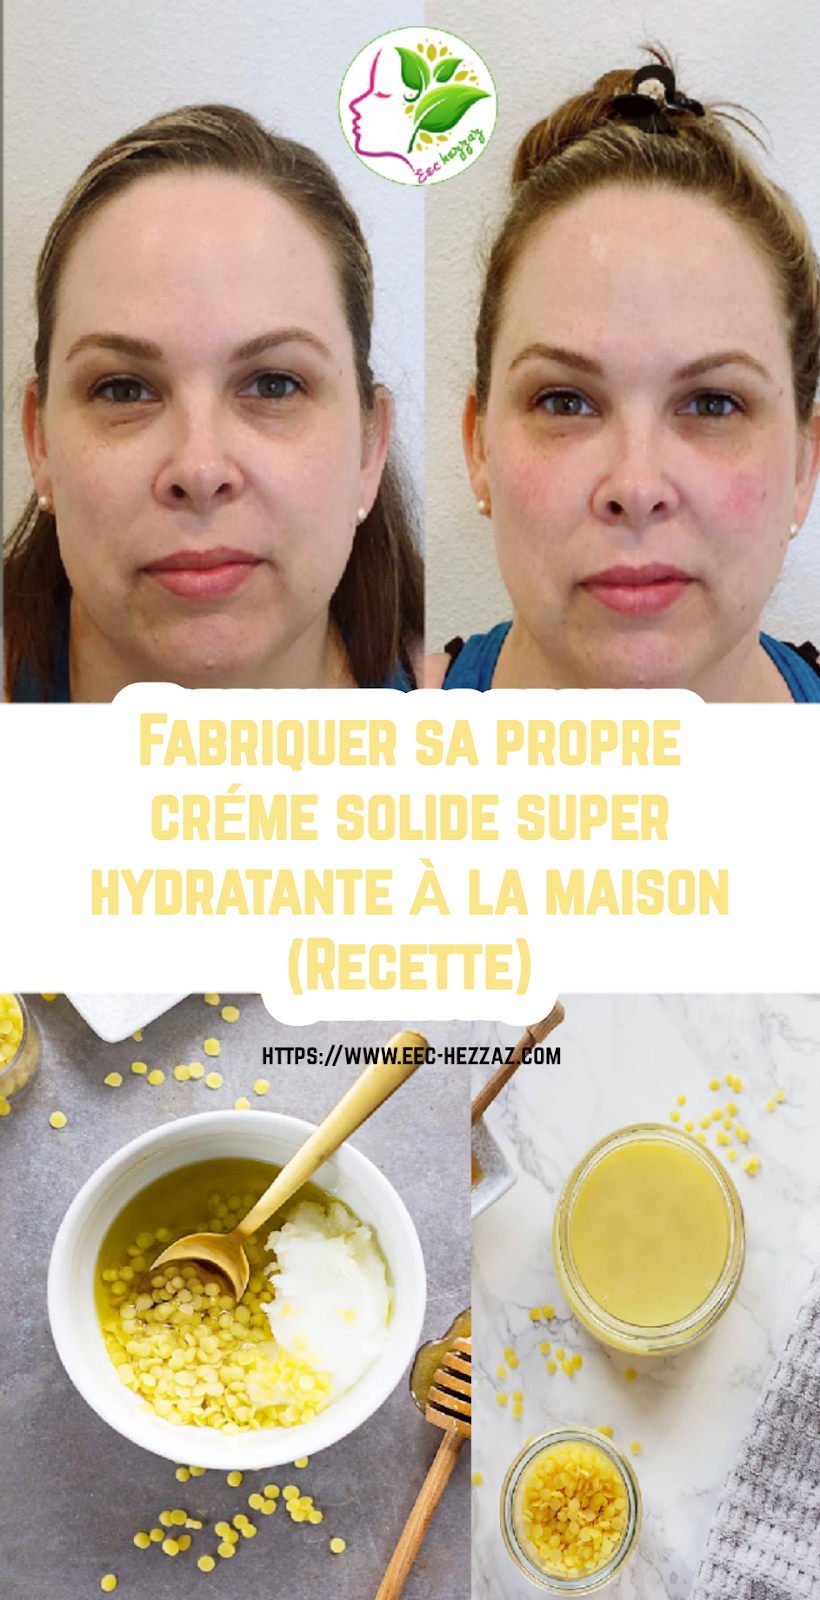 Fabriquer sa propre crème solide super hydratante à la maison (Recette)